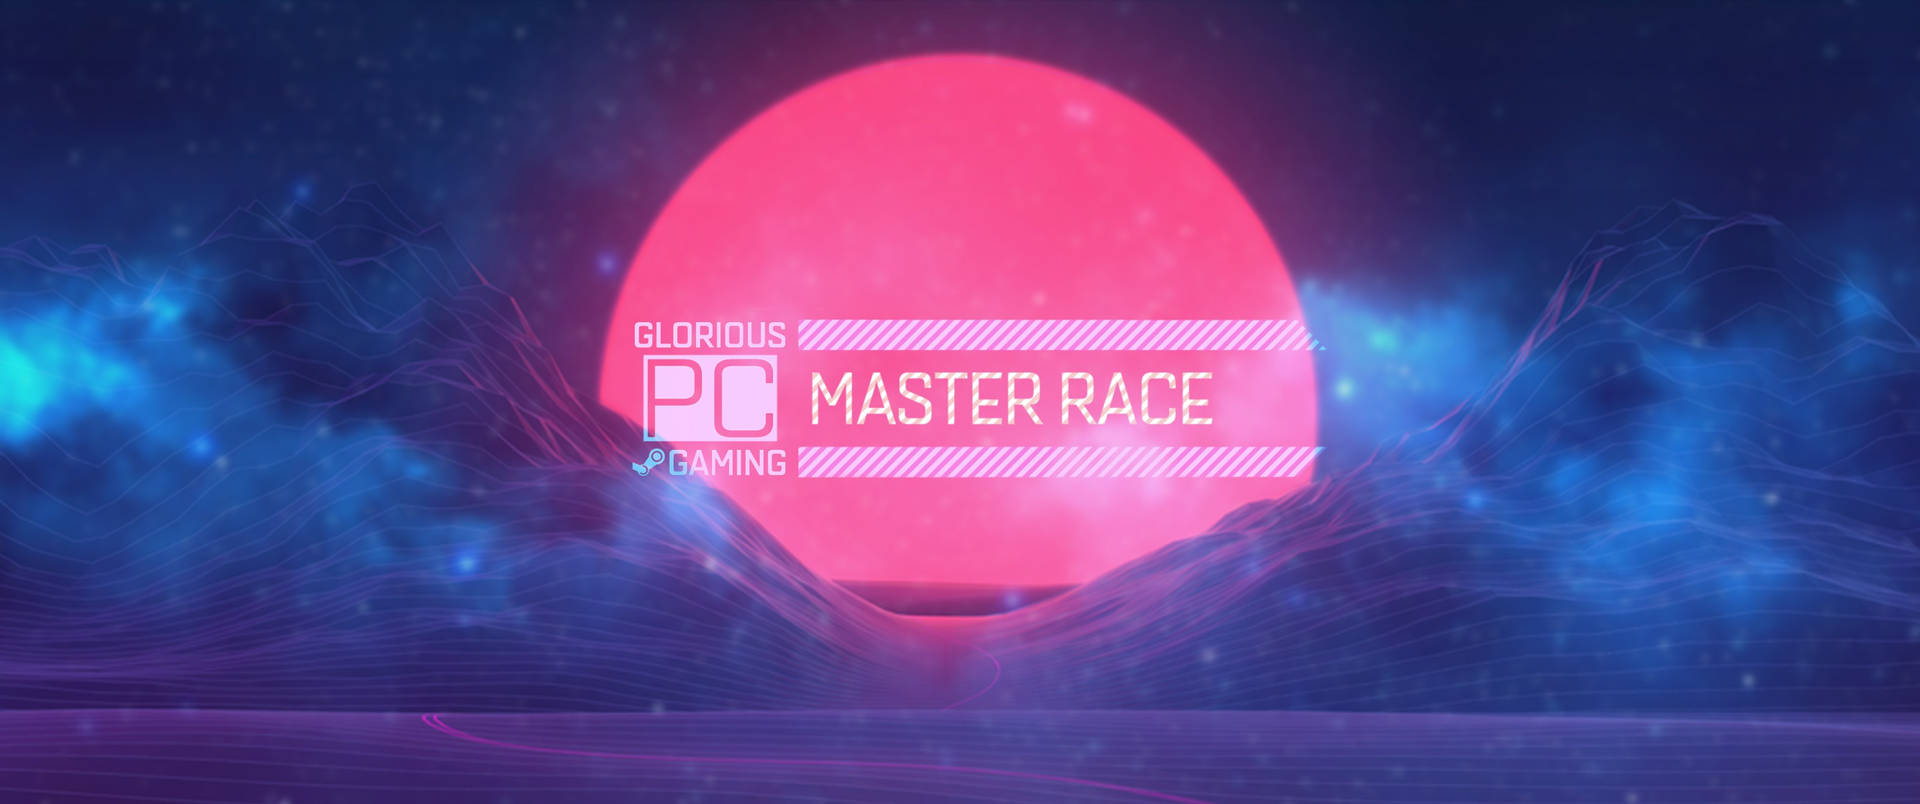 Pc Master Race Blue Smoke Glow Wallpaper